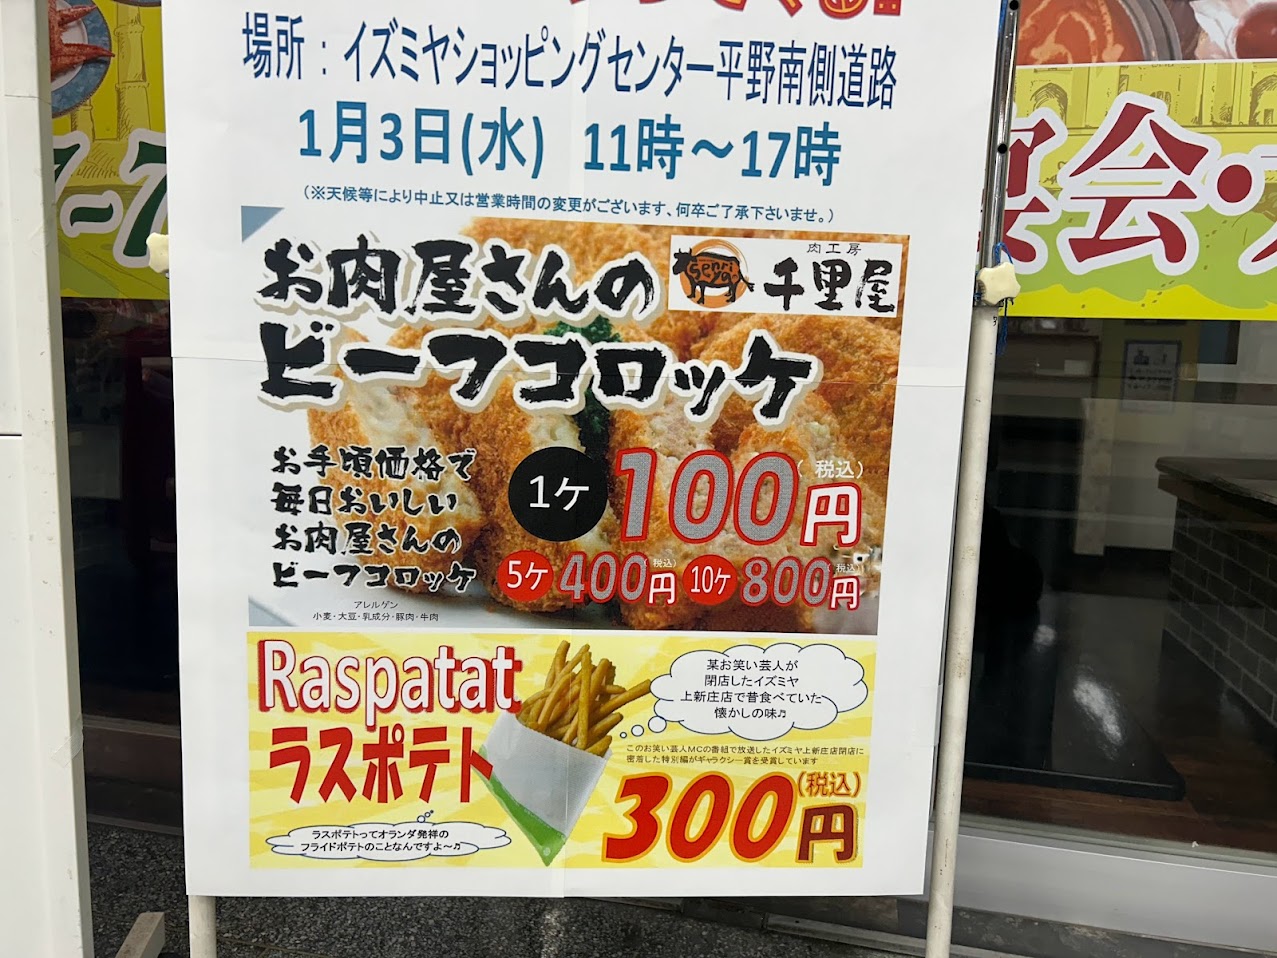 イズミヤショッピングセンター平野キッチンカーお知らせ3